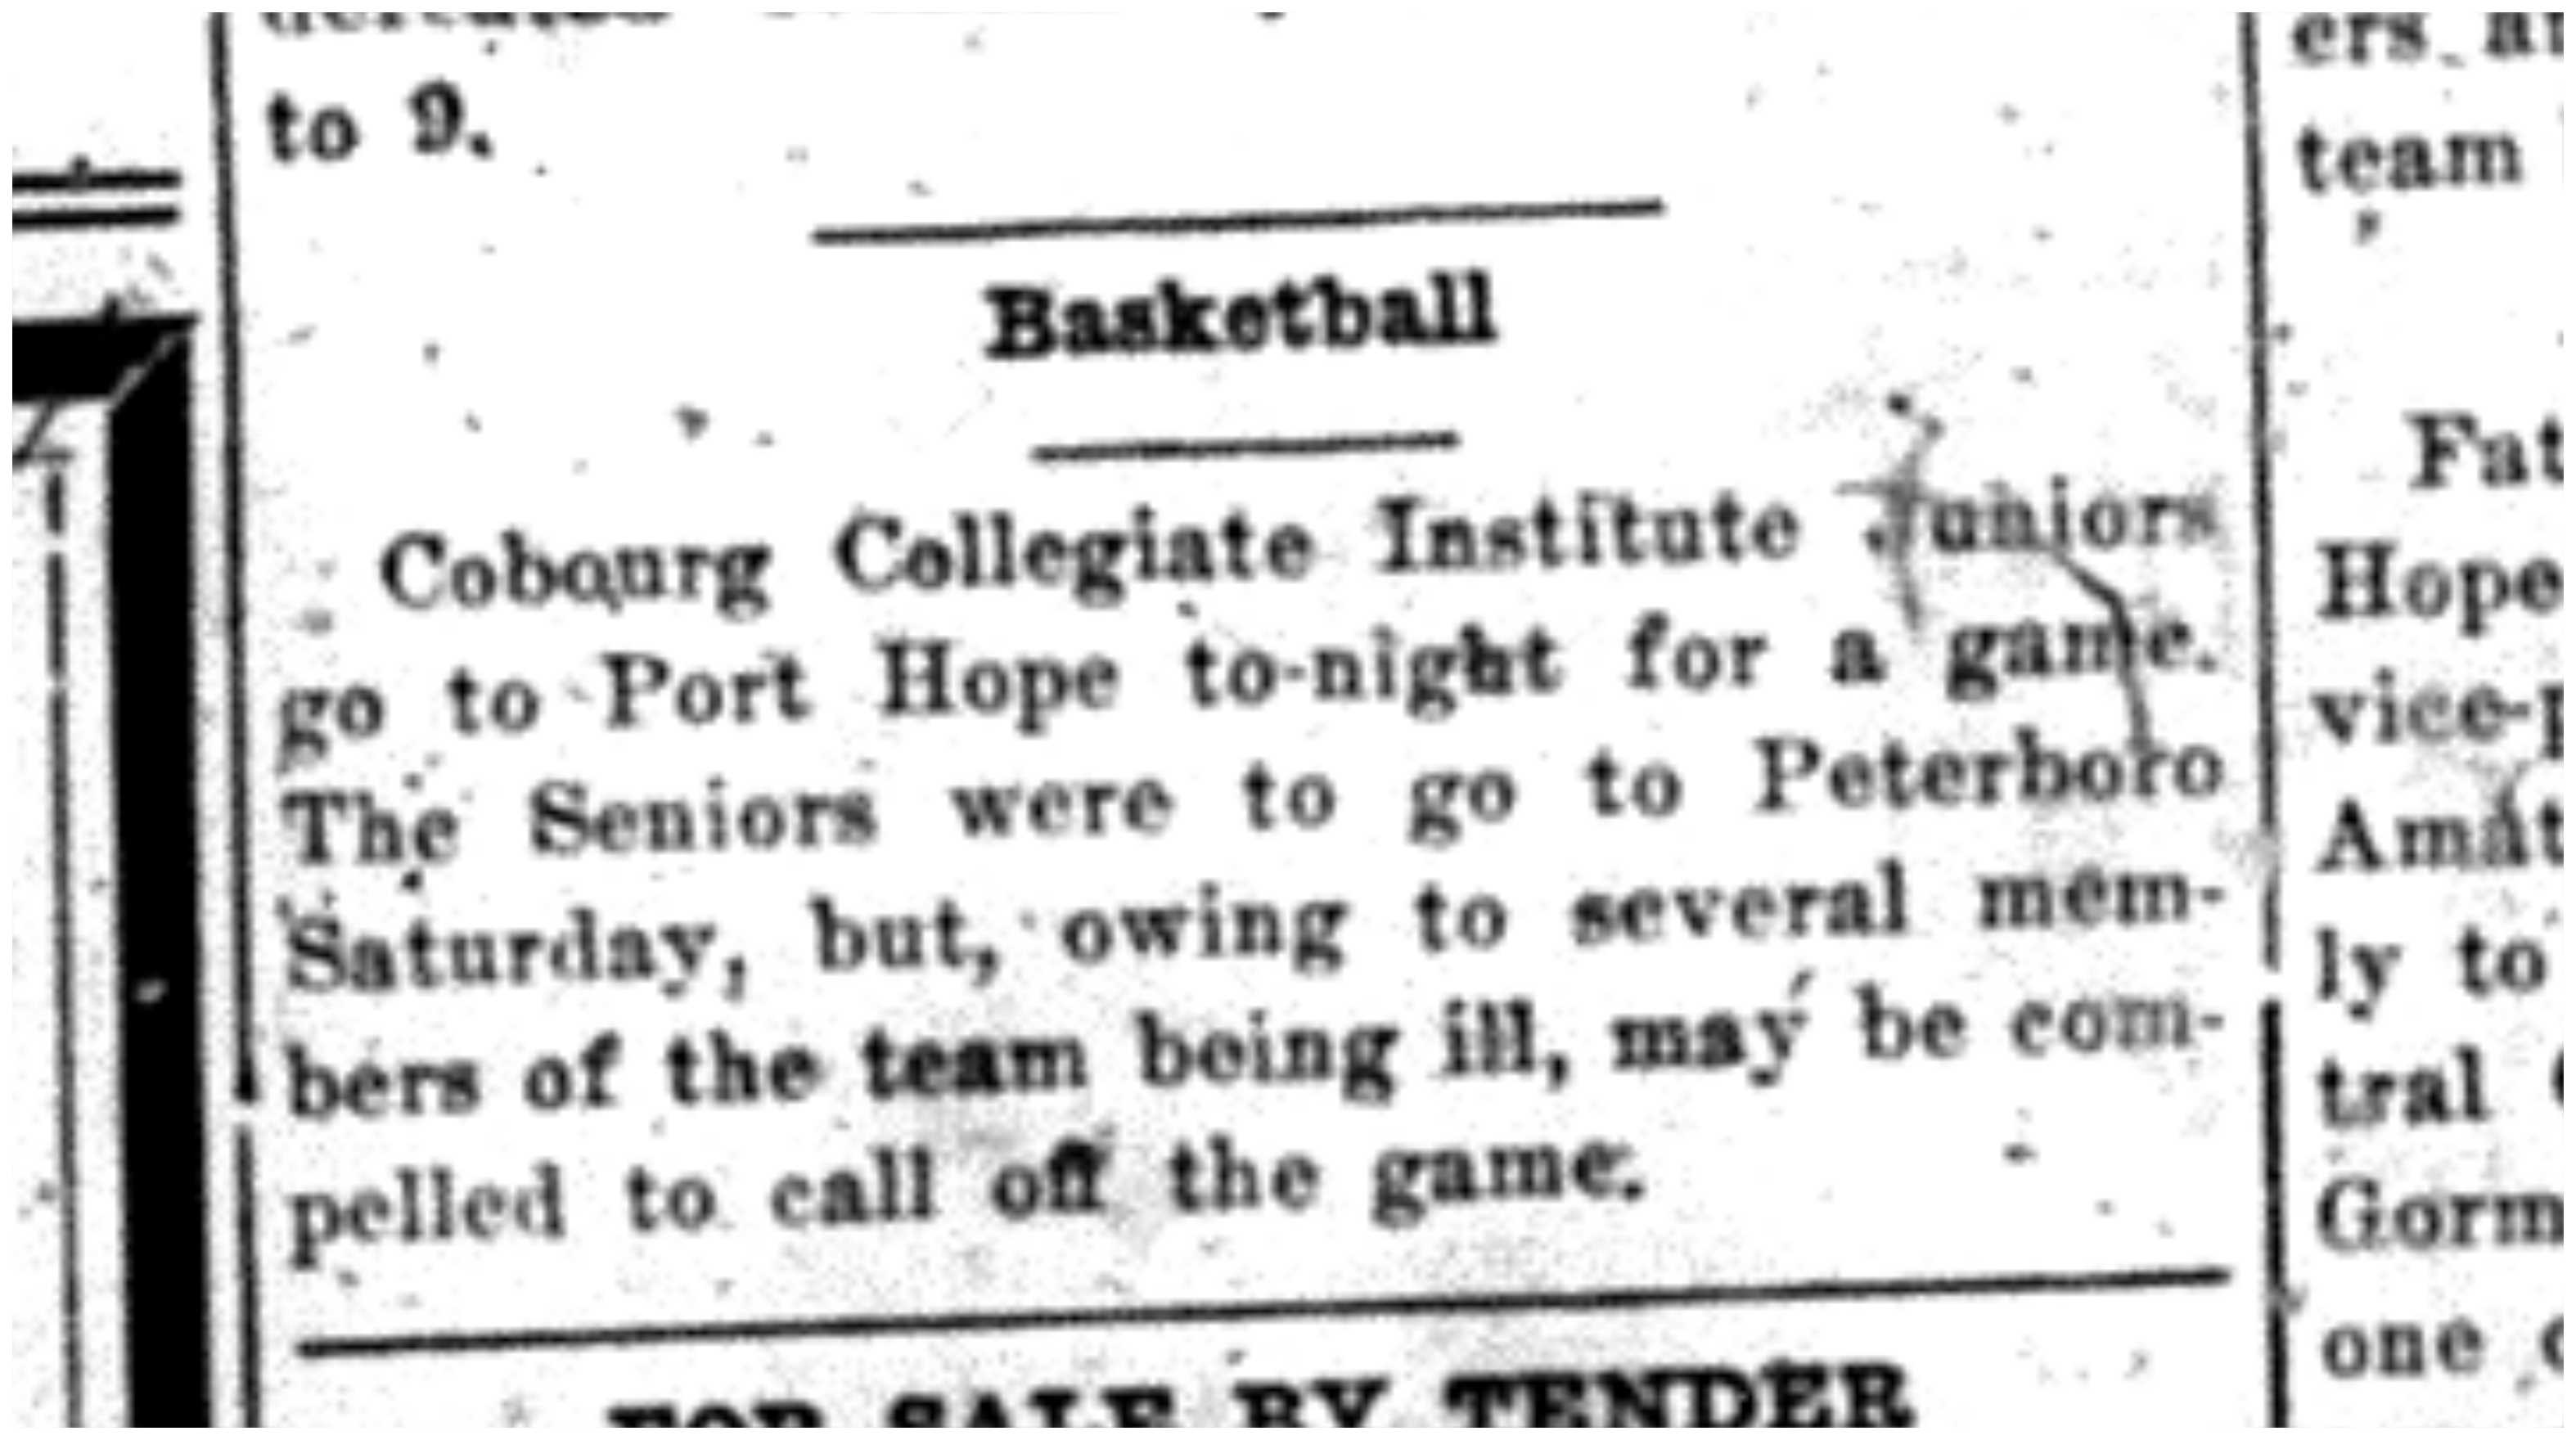 1920-02-12 School -CCI-Basketball